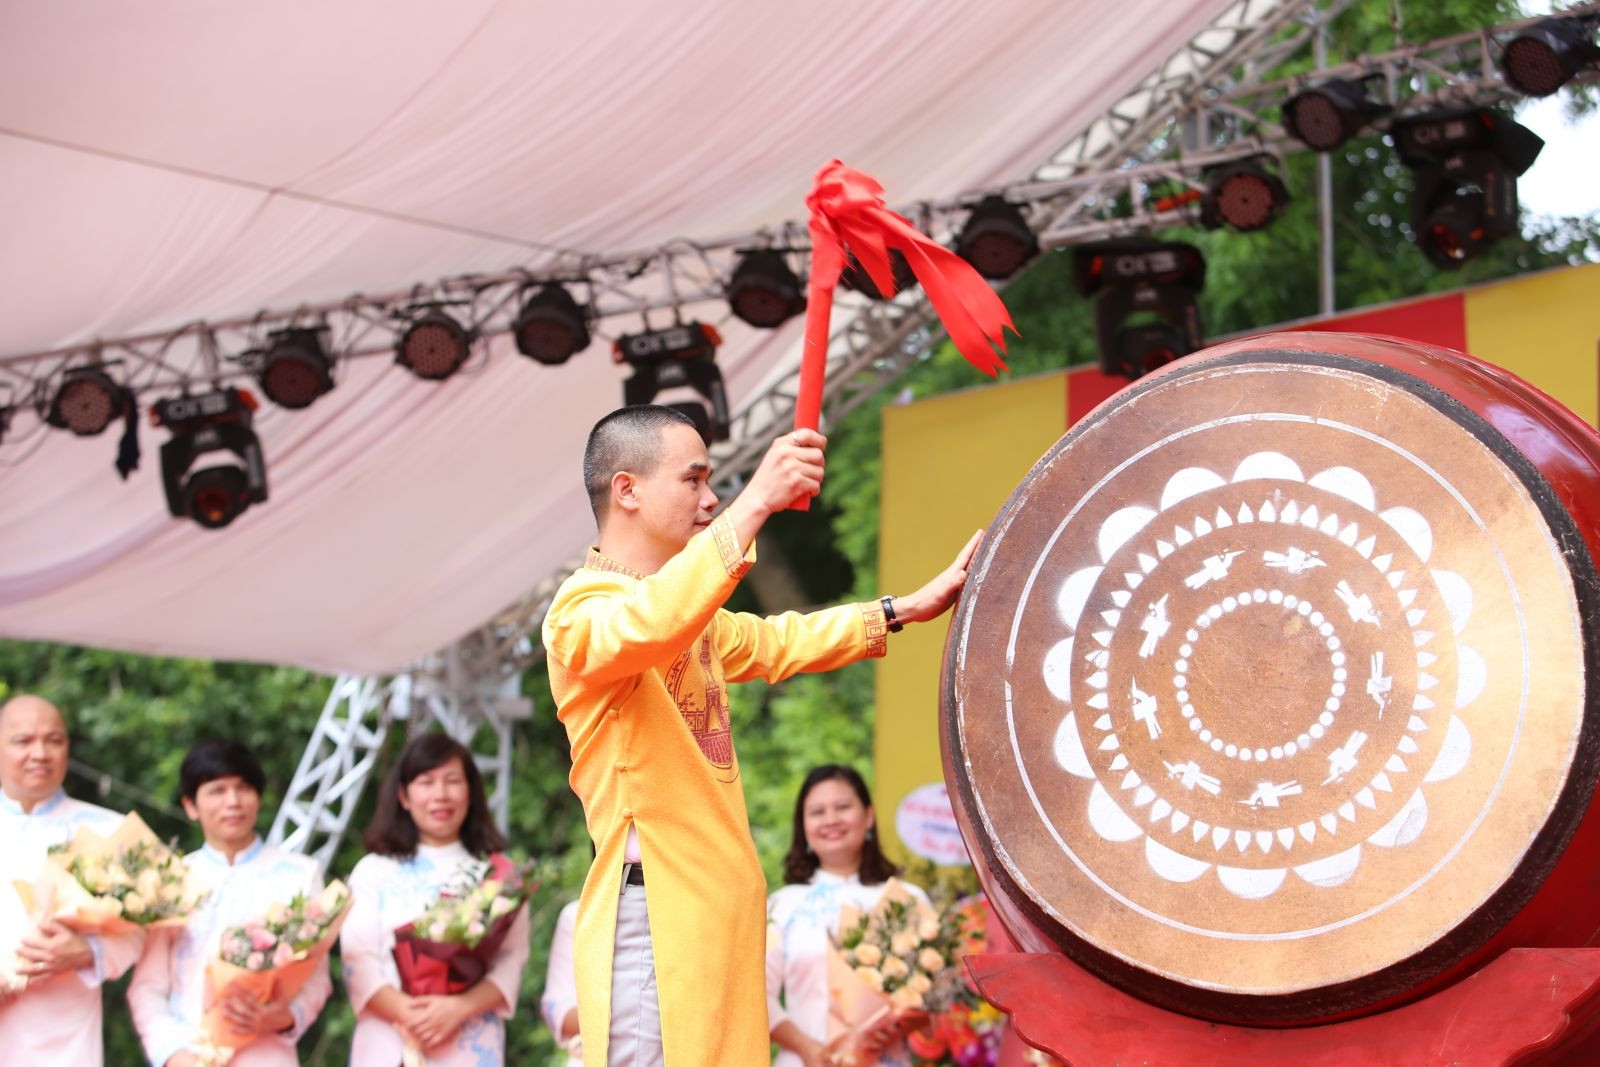 Trường Đại học Hà Nội khai giảng năm học mới 2018 - 2019